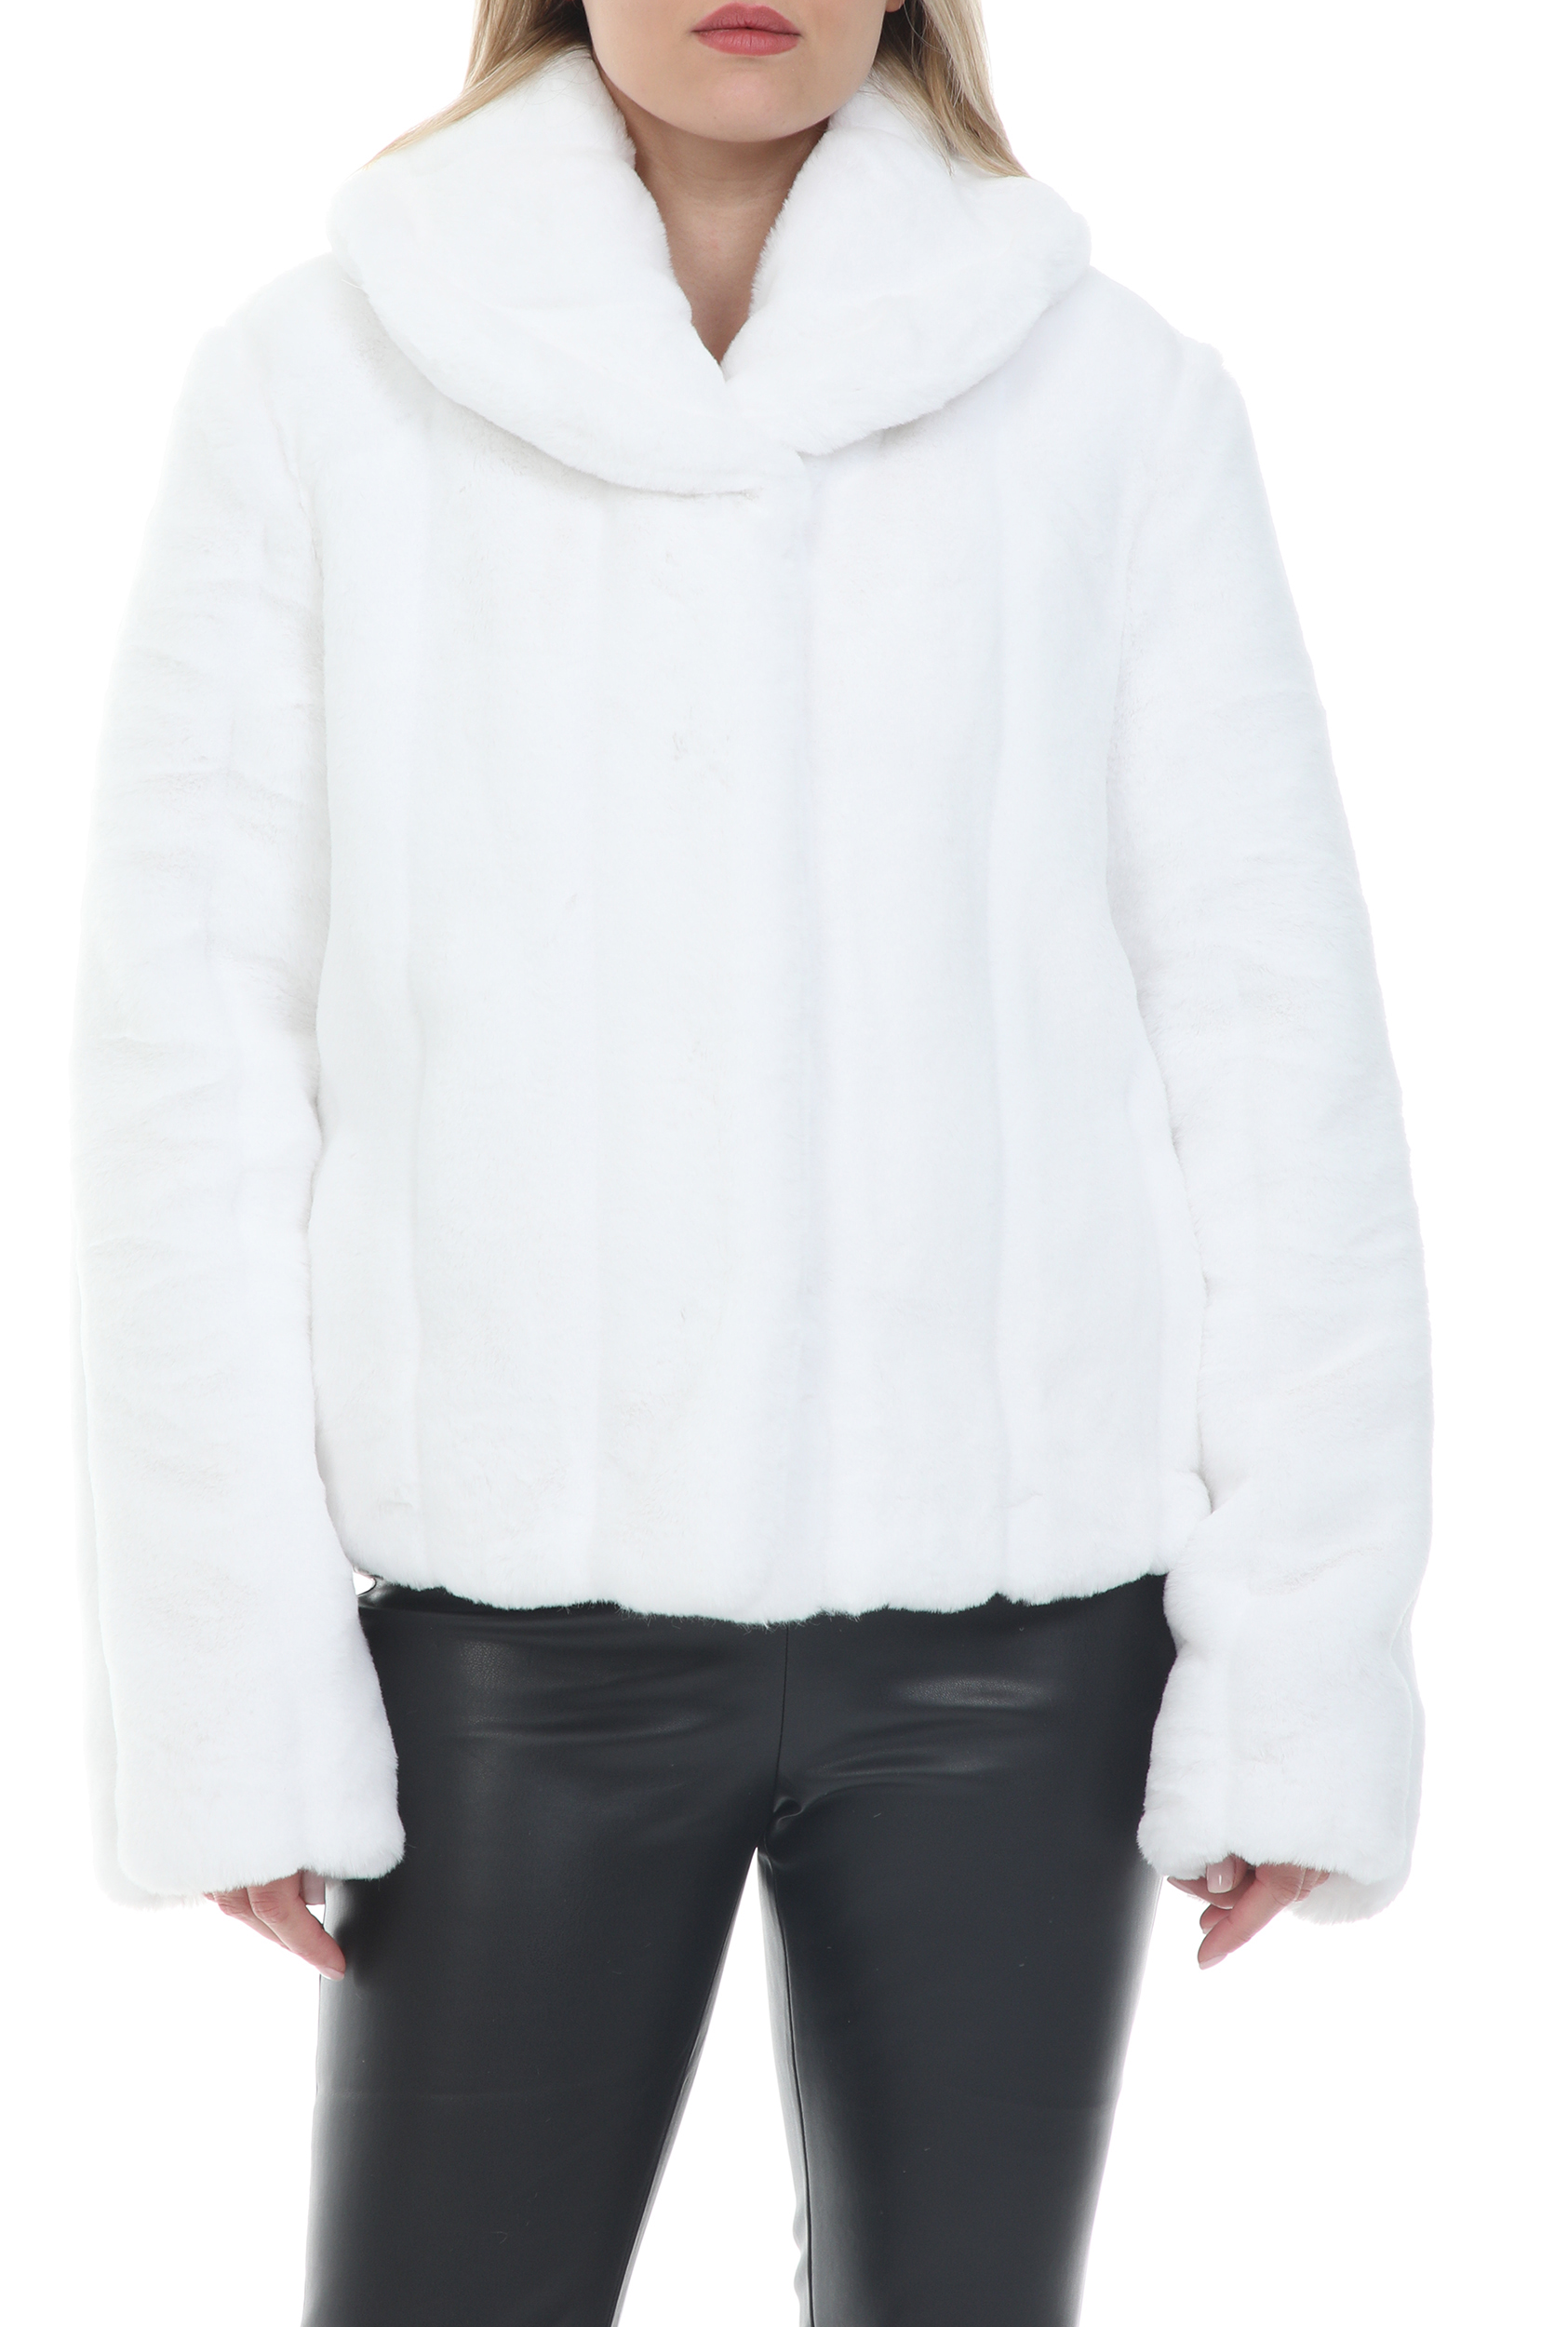 Γυναικεία/Ρούχα/Πανωφόρια/Τζάκετς GUESS - Γυναικείο γούνινο jacket GUESS NEW SOPHY JACKET - STRIPY CHI λευκό